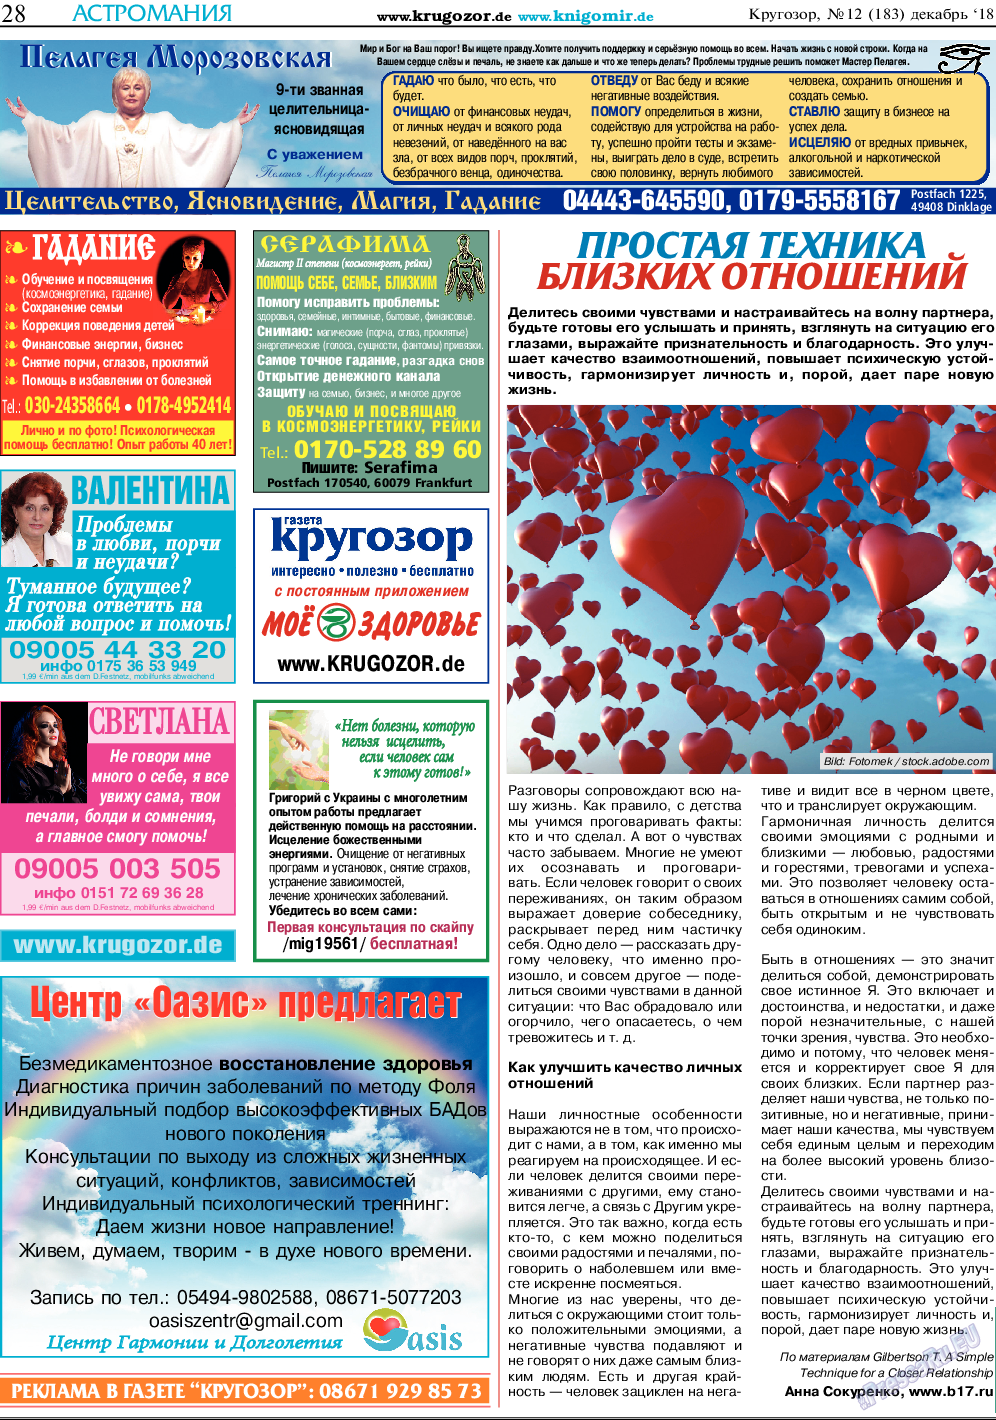 Кругозор, газета. 2018 №12 стр.28